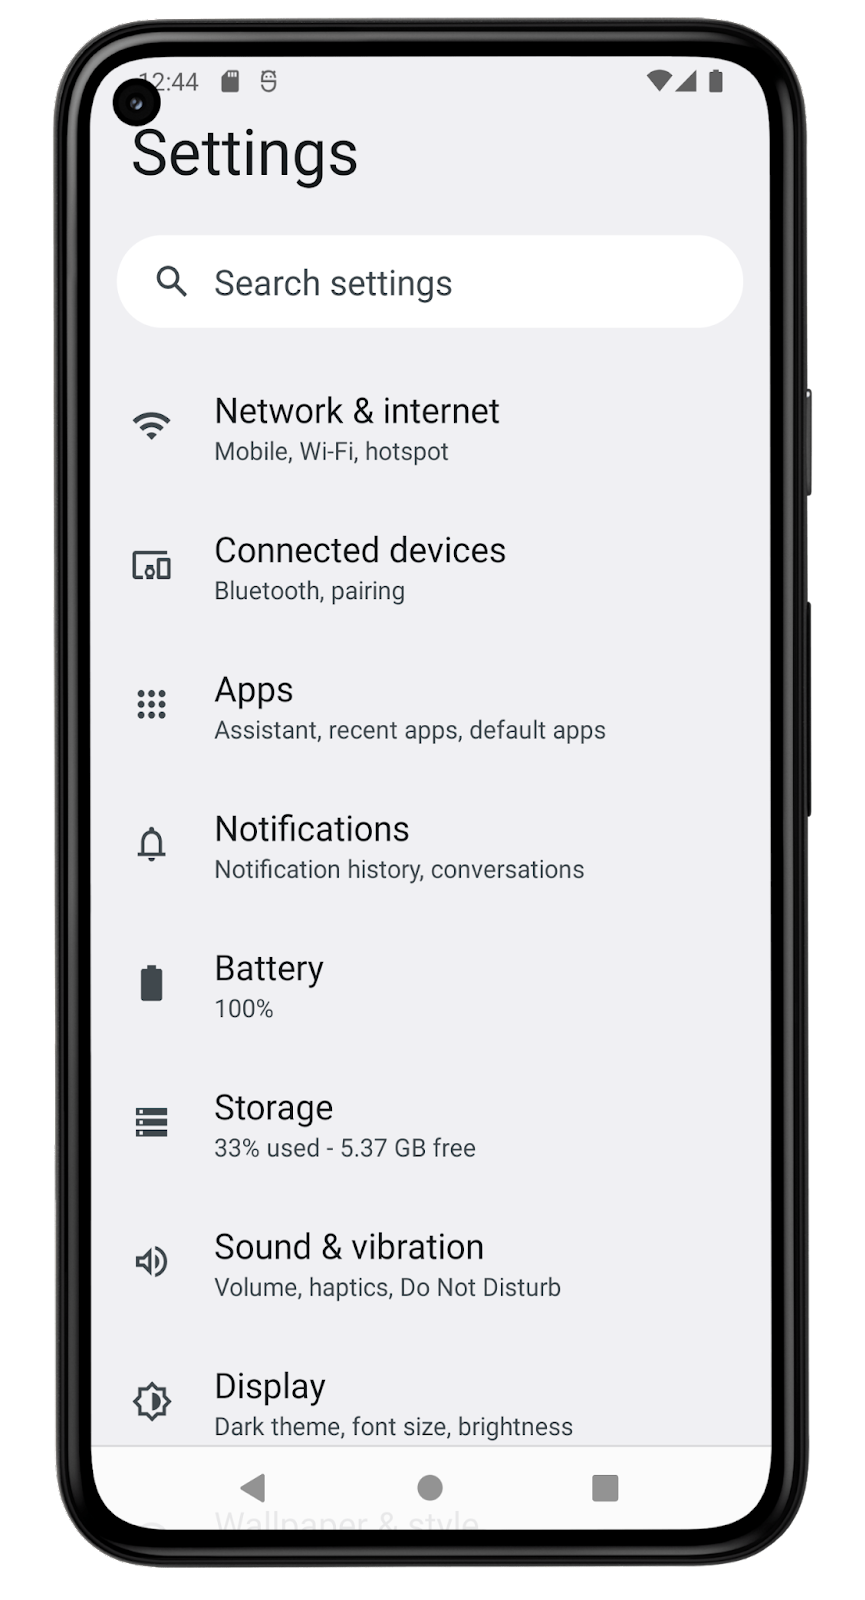 Screenshot aplikasi Setelan ini menunjukkan berbagai opsi menu untuk mengubah setelan pada perangkat. Item menu yang ditampilkan di layar adalah: Jaringan & internet, Perangkat terhubung, Aplikasi, Notifikasi, Baterai, Penyimpanan, Suara & getaran, serta Layar. 